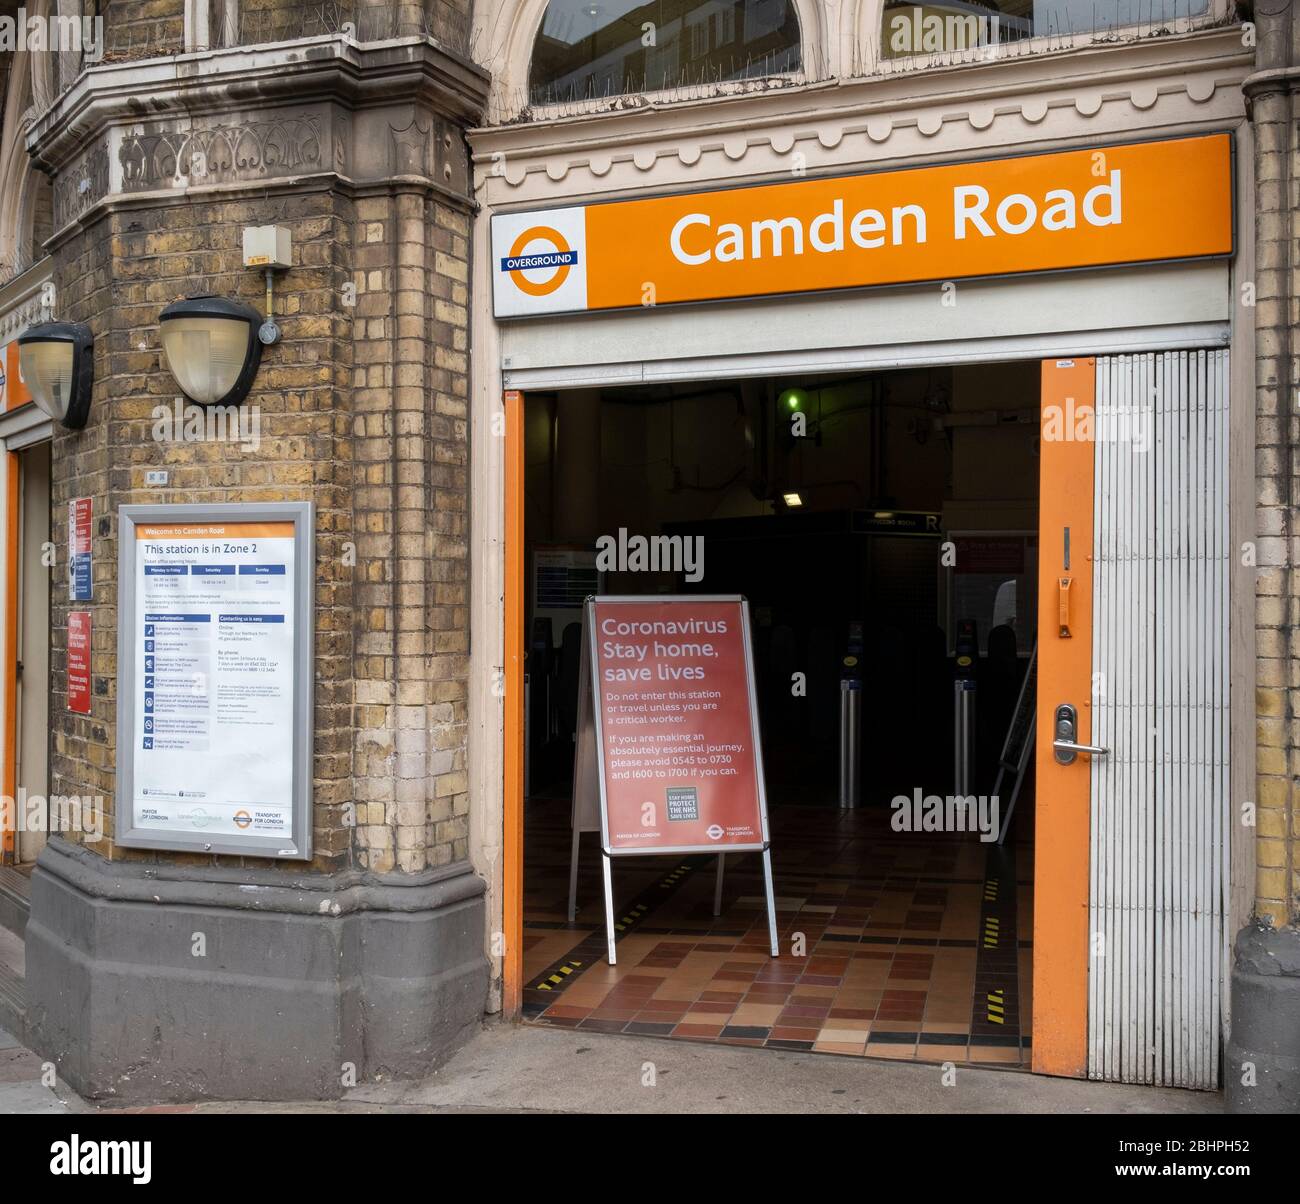 London Lockdown: Solo avvisi di viaggio essenziali alla stazione Camden Road London Overground di Camden Town che esortano le persone a rimanere a casa durante la pandemia Foto Stock